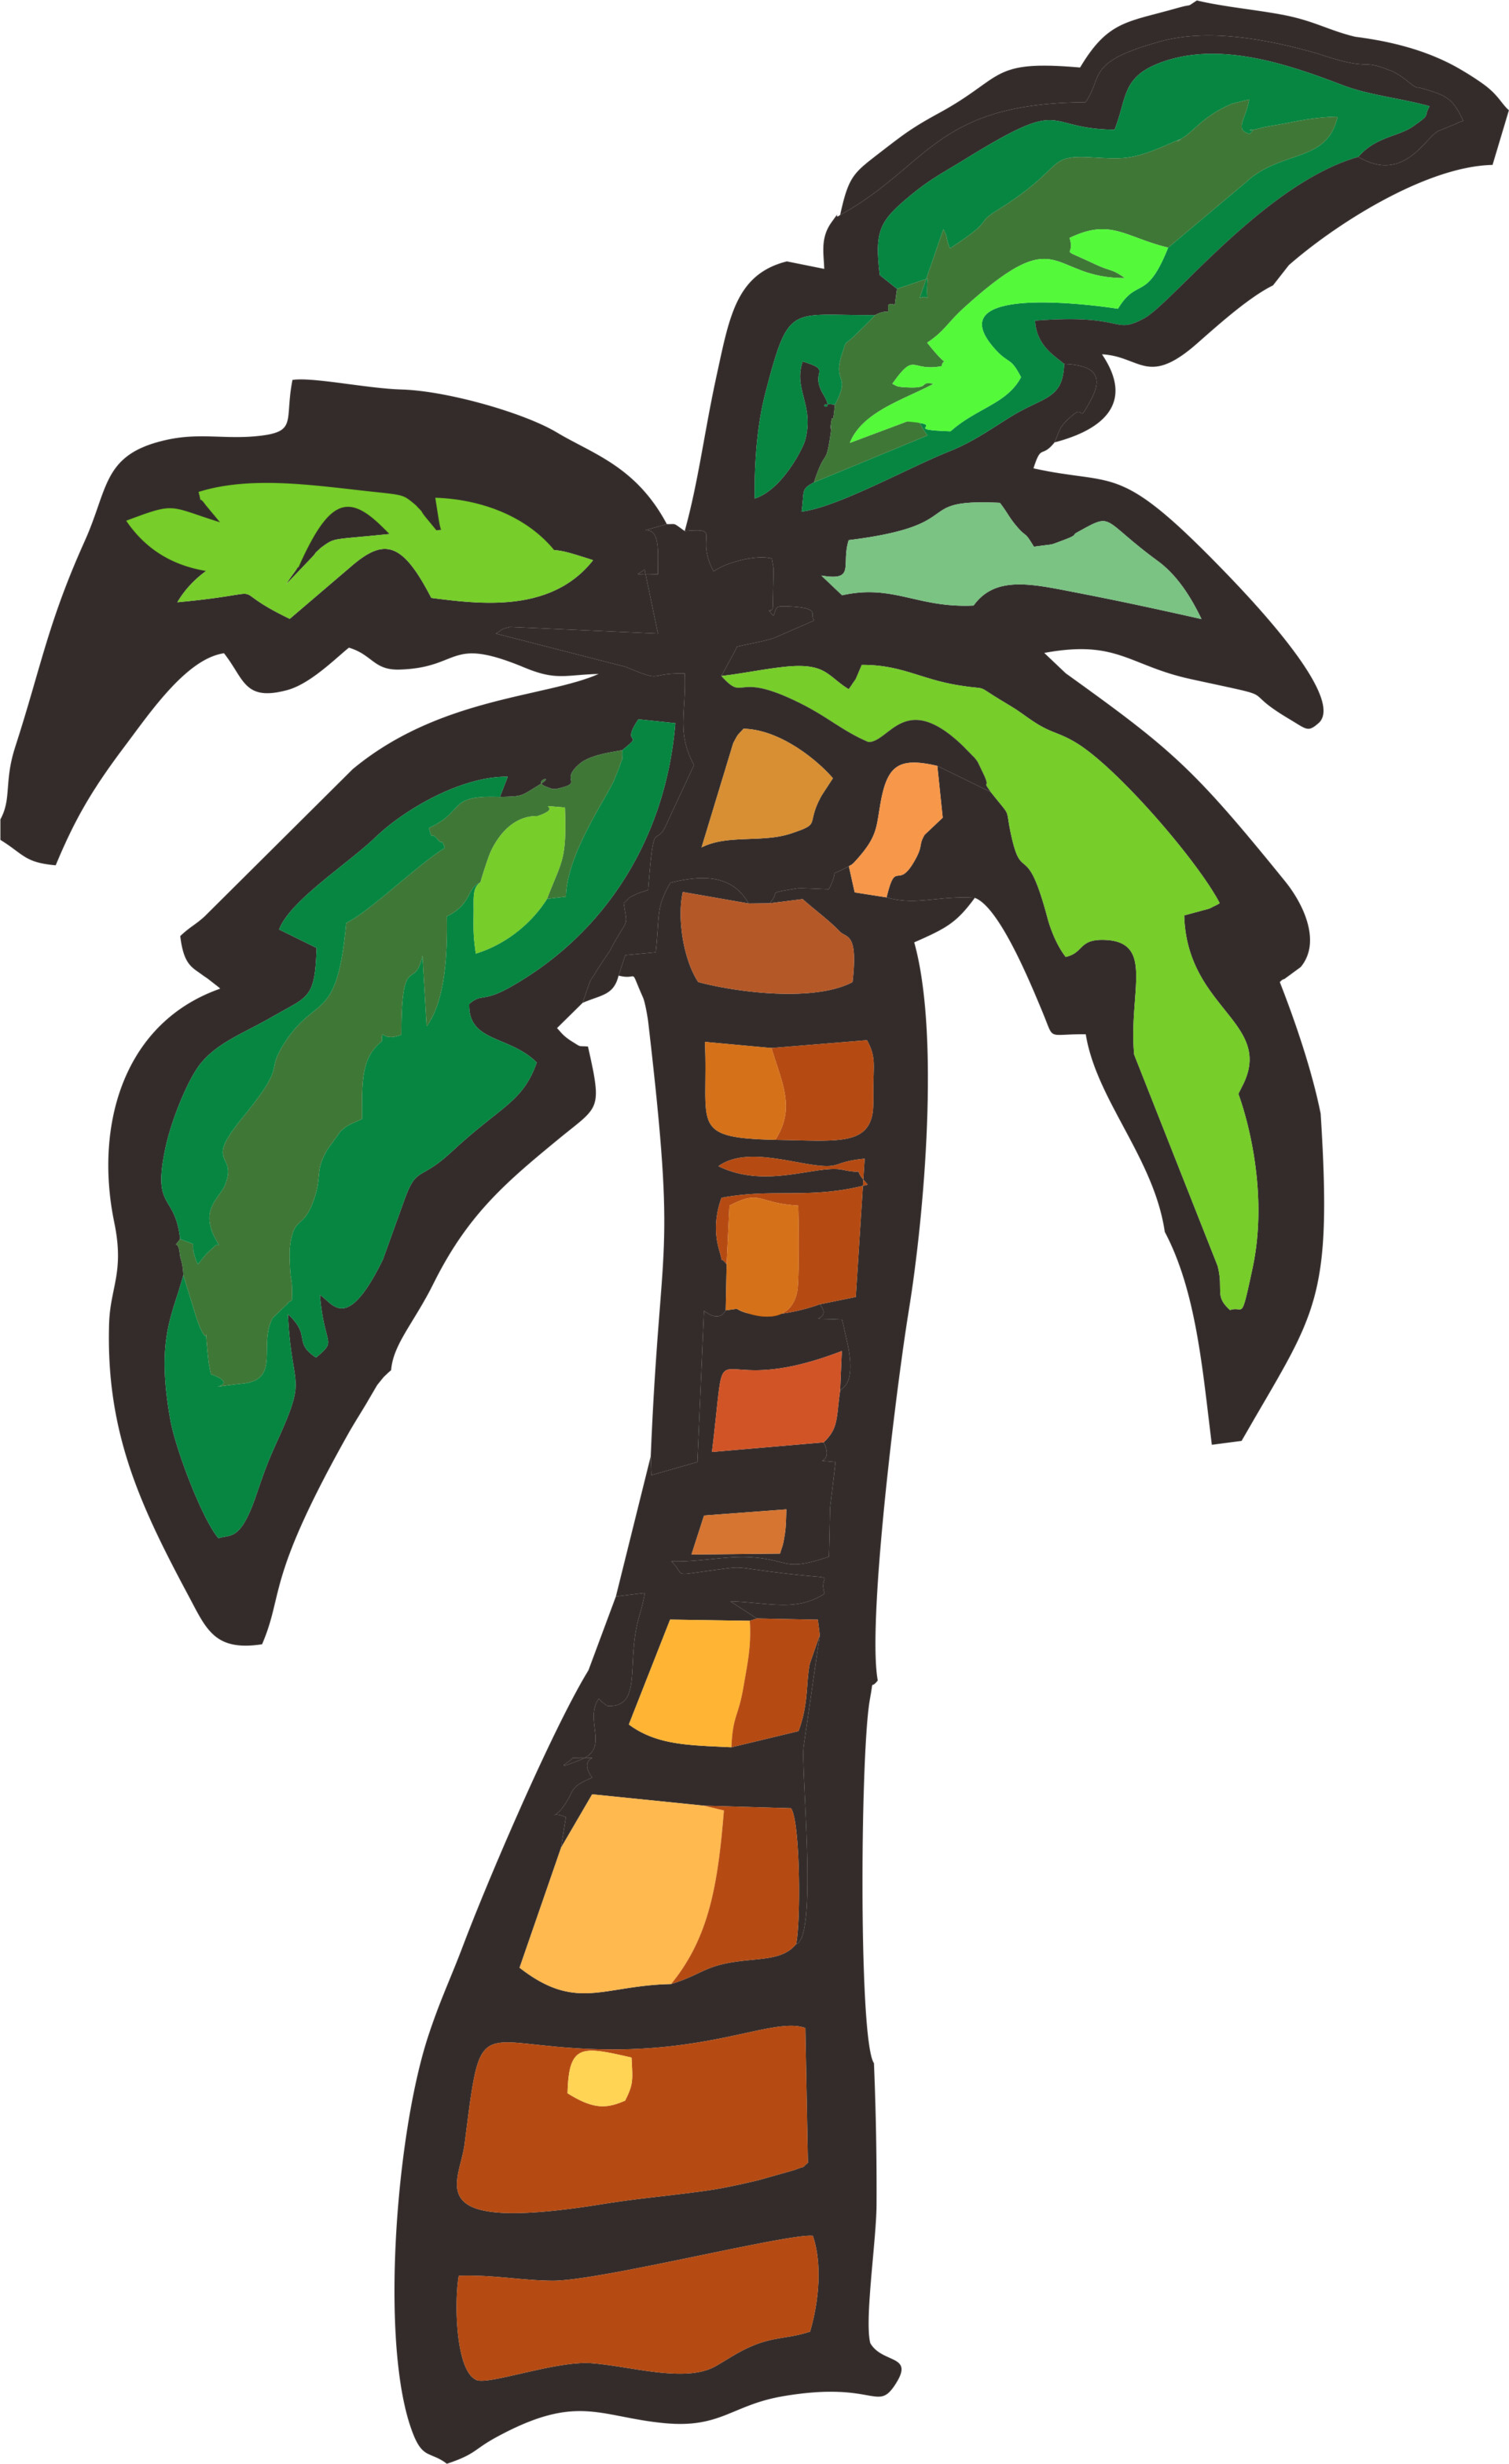 ArtStation - Coconut Tree Cartoon